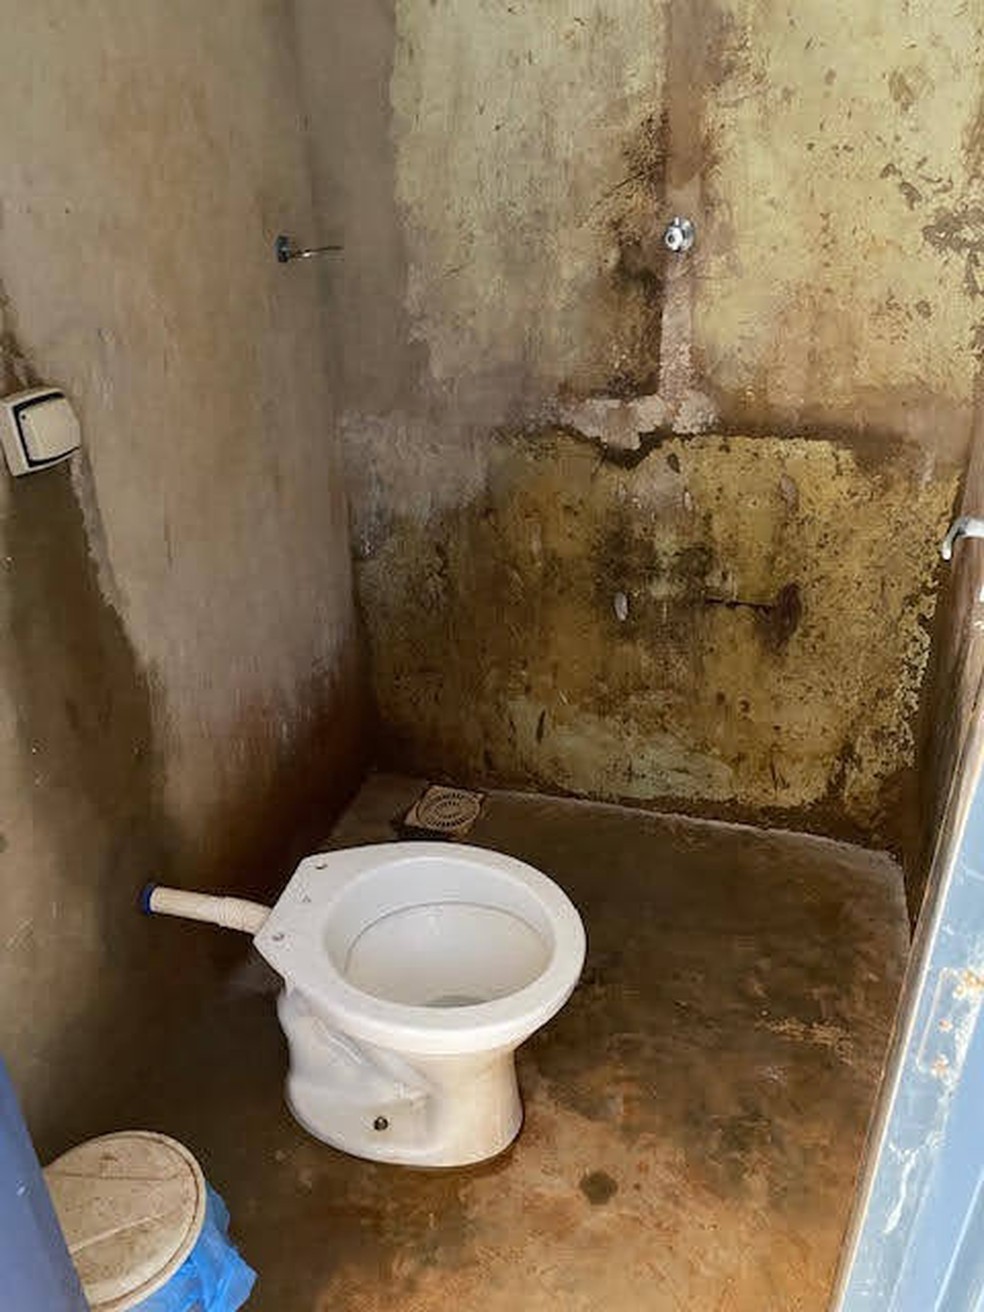 Condição de banheiro em condomínio no qual viviam trabalhadores em Parcatu — Foto: Grupo de Combate ao Trabalho Escravo em Minas Gerais/ Divulgação